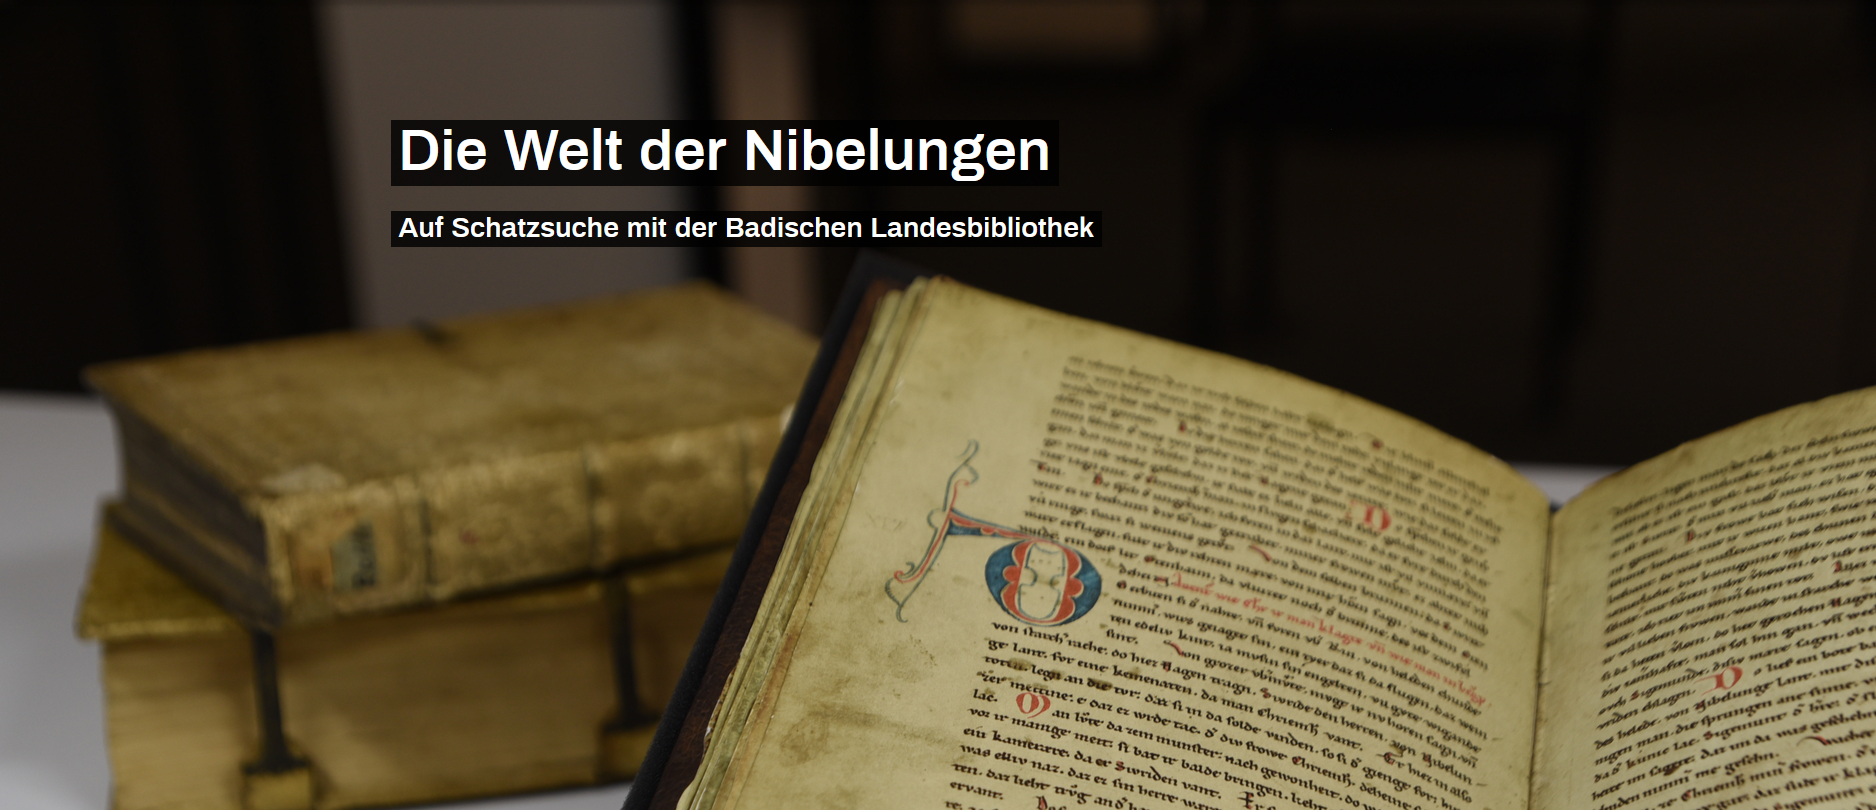 Zu sehen ist eine Detailansicht des Nibelungenliedes, sowie weitere Bücher. Der beinhaltete Text lautet: "Die Welt der Nibelungen. Auf Schatzsuche mit der Badischen Landesbibliothek". 